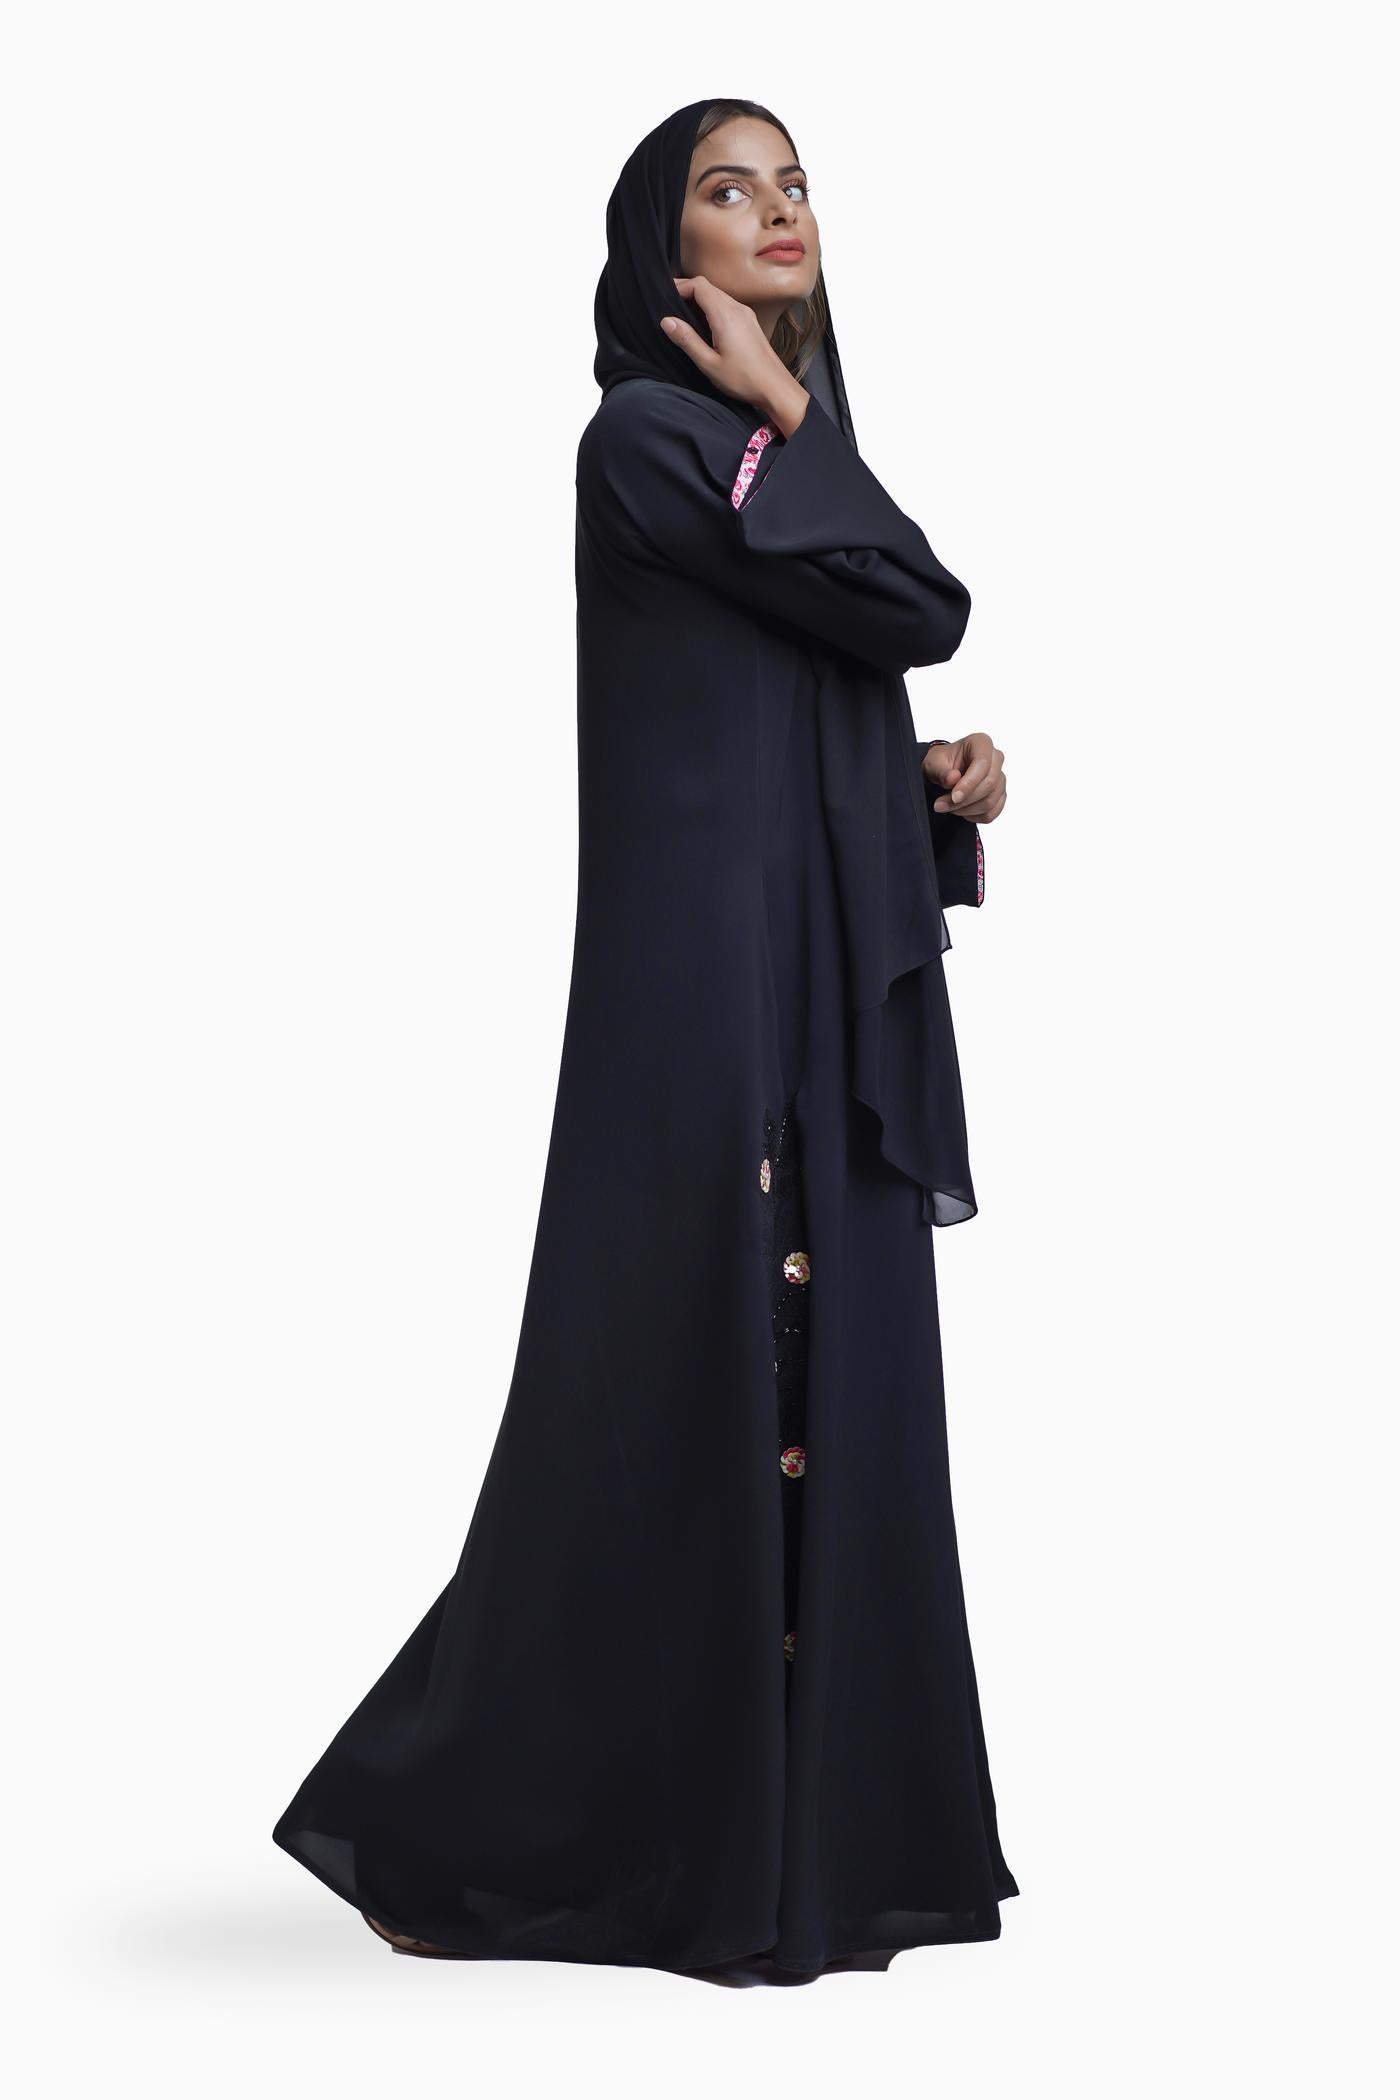 Dananir Abaya - Fashion by Shehna